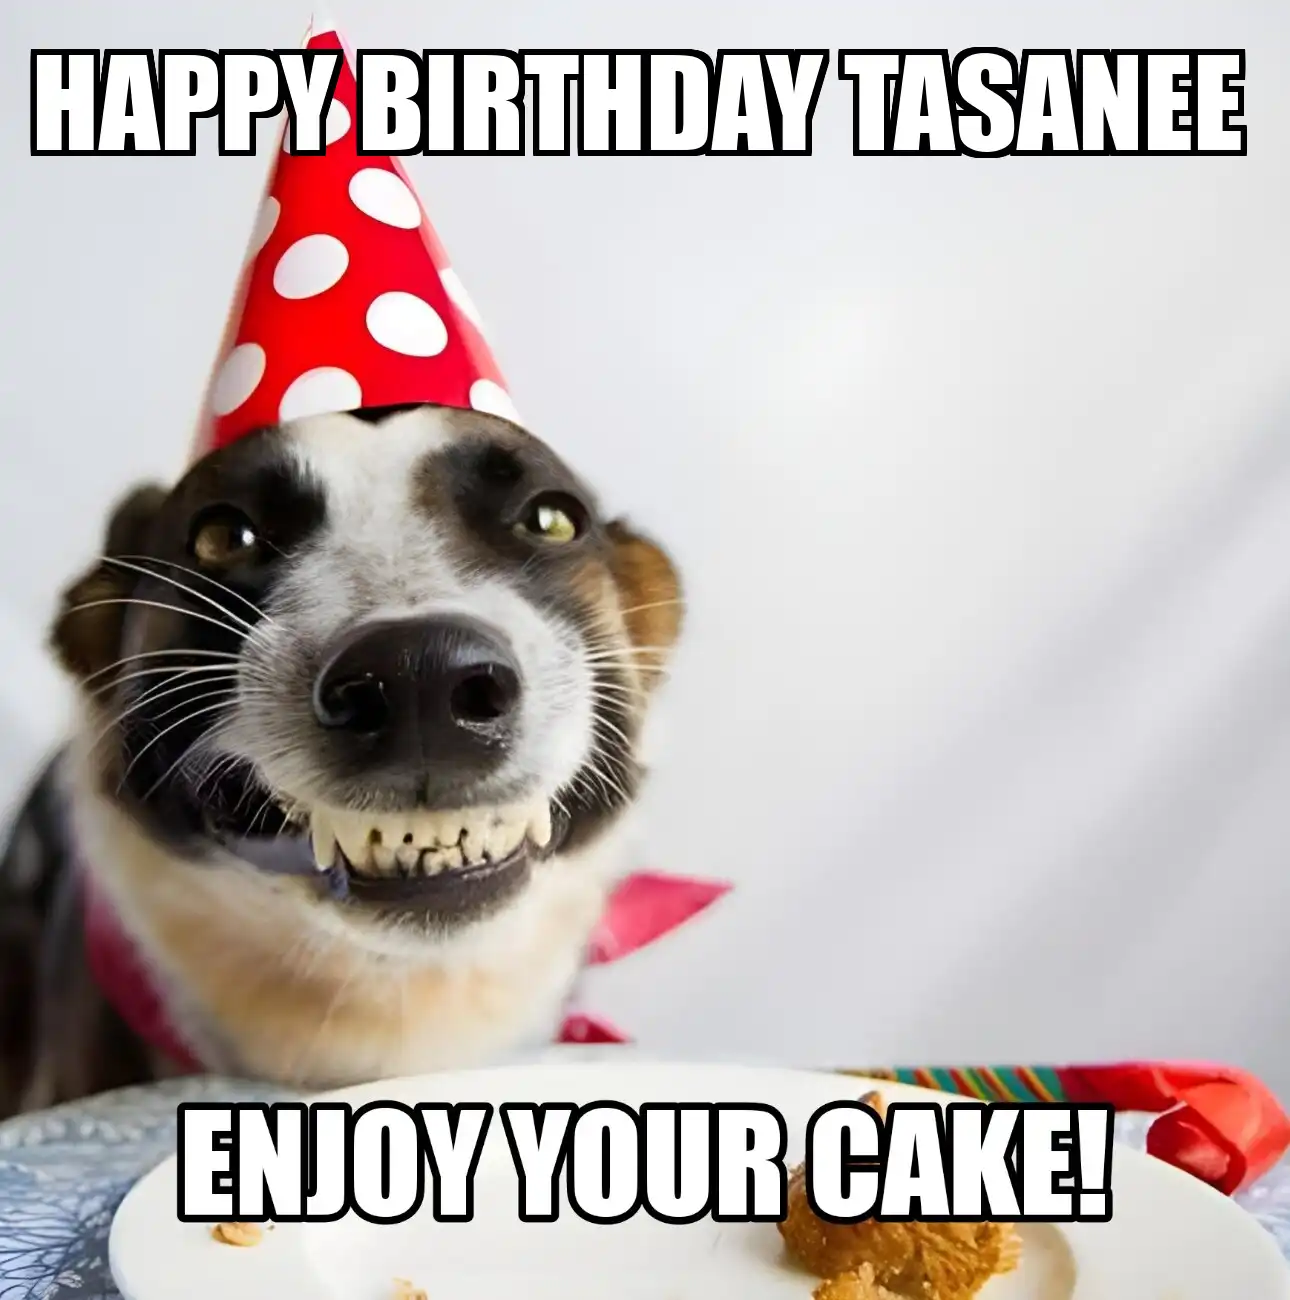 Happy Birthday Tasanee Enjoy Your Cake Dog Meme